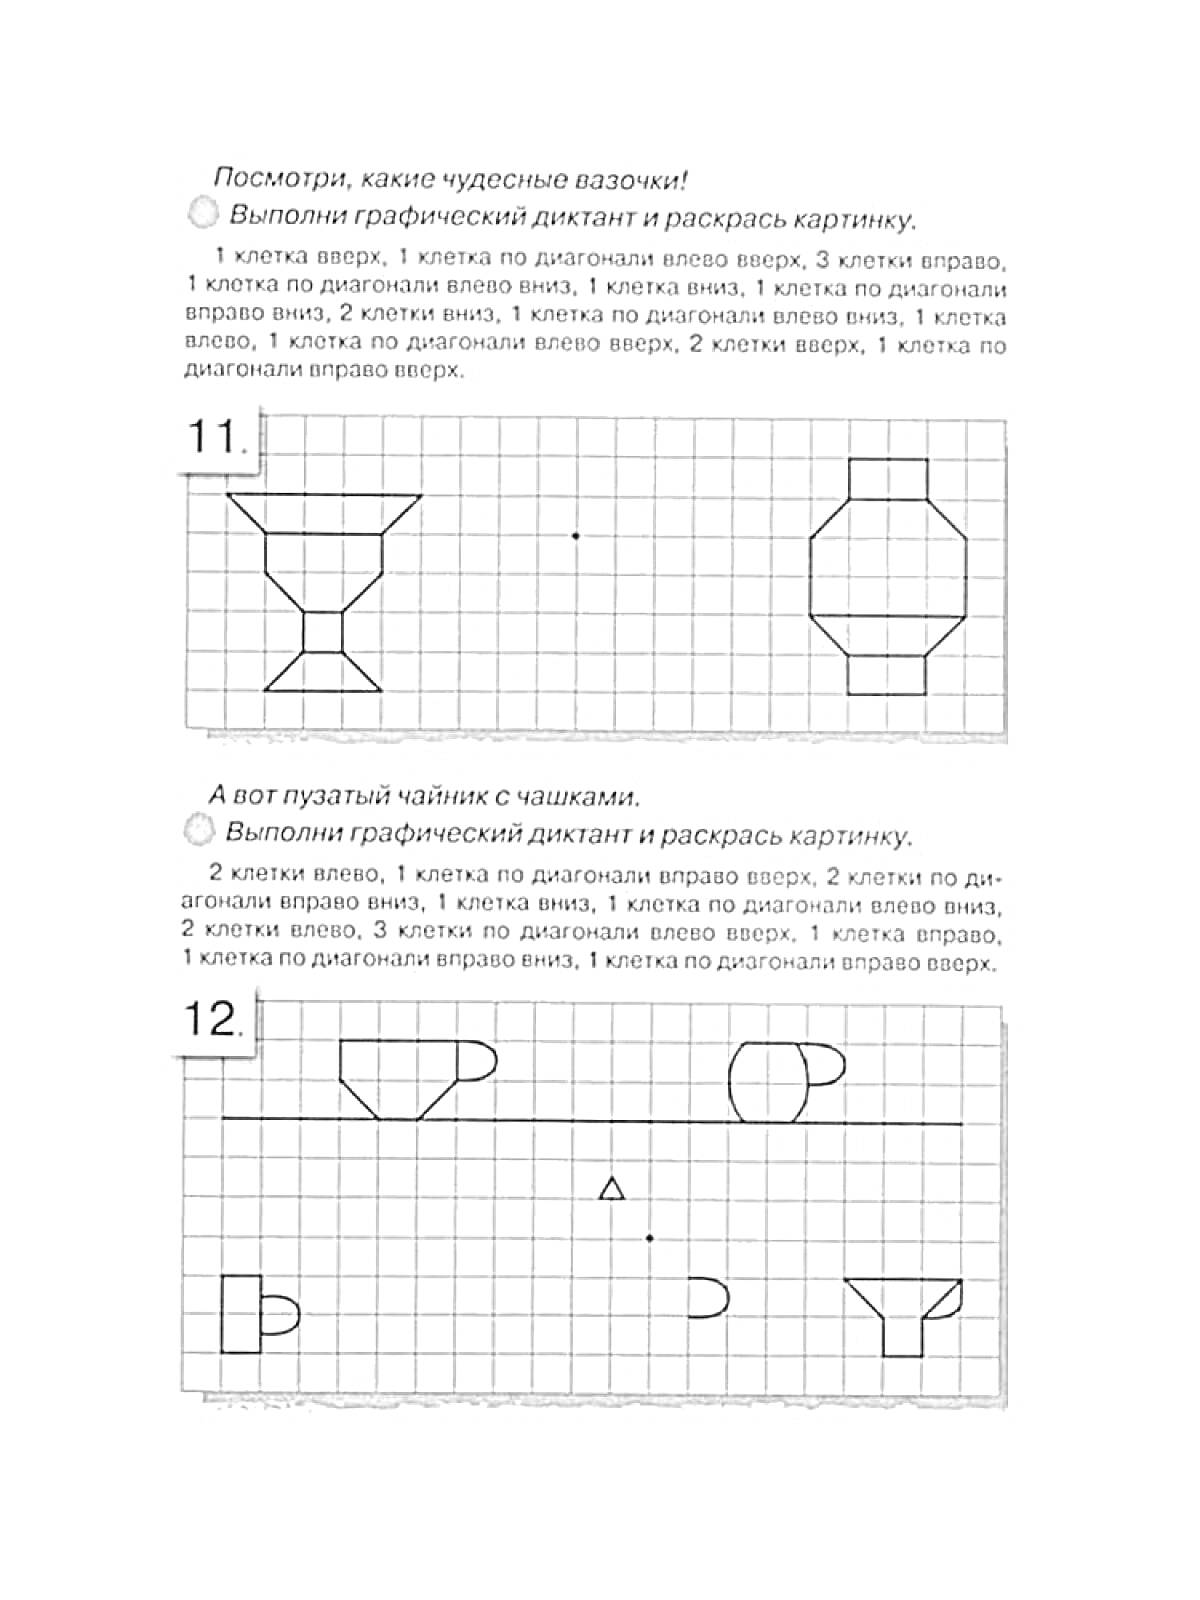 Графический диктант - 11: Ваза и шестиугольник, 12: Чашки и треугольник.